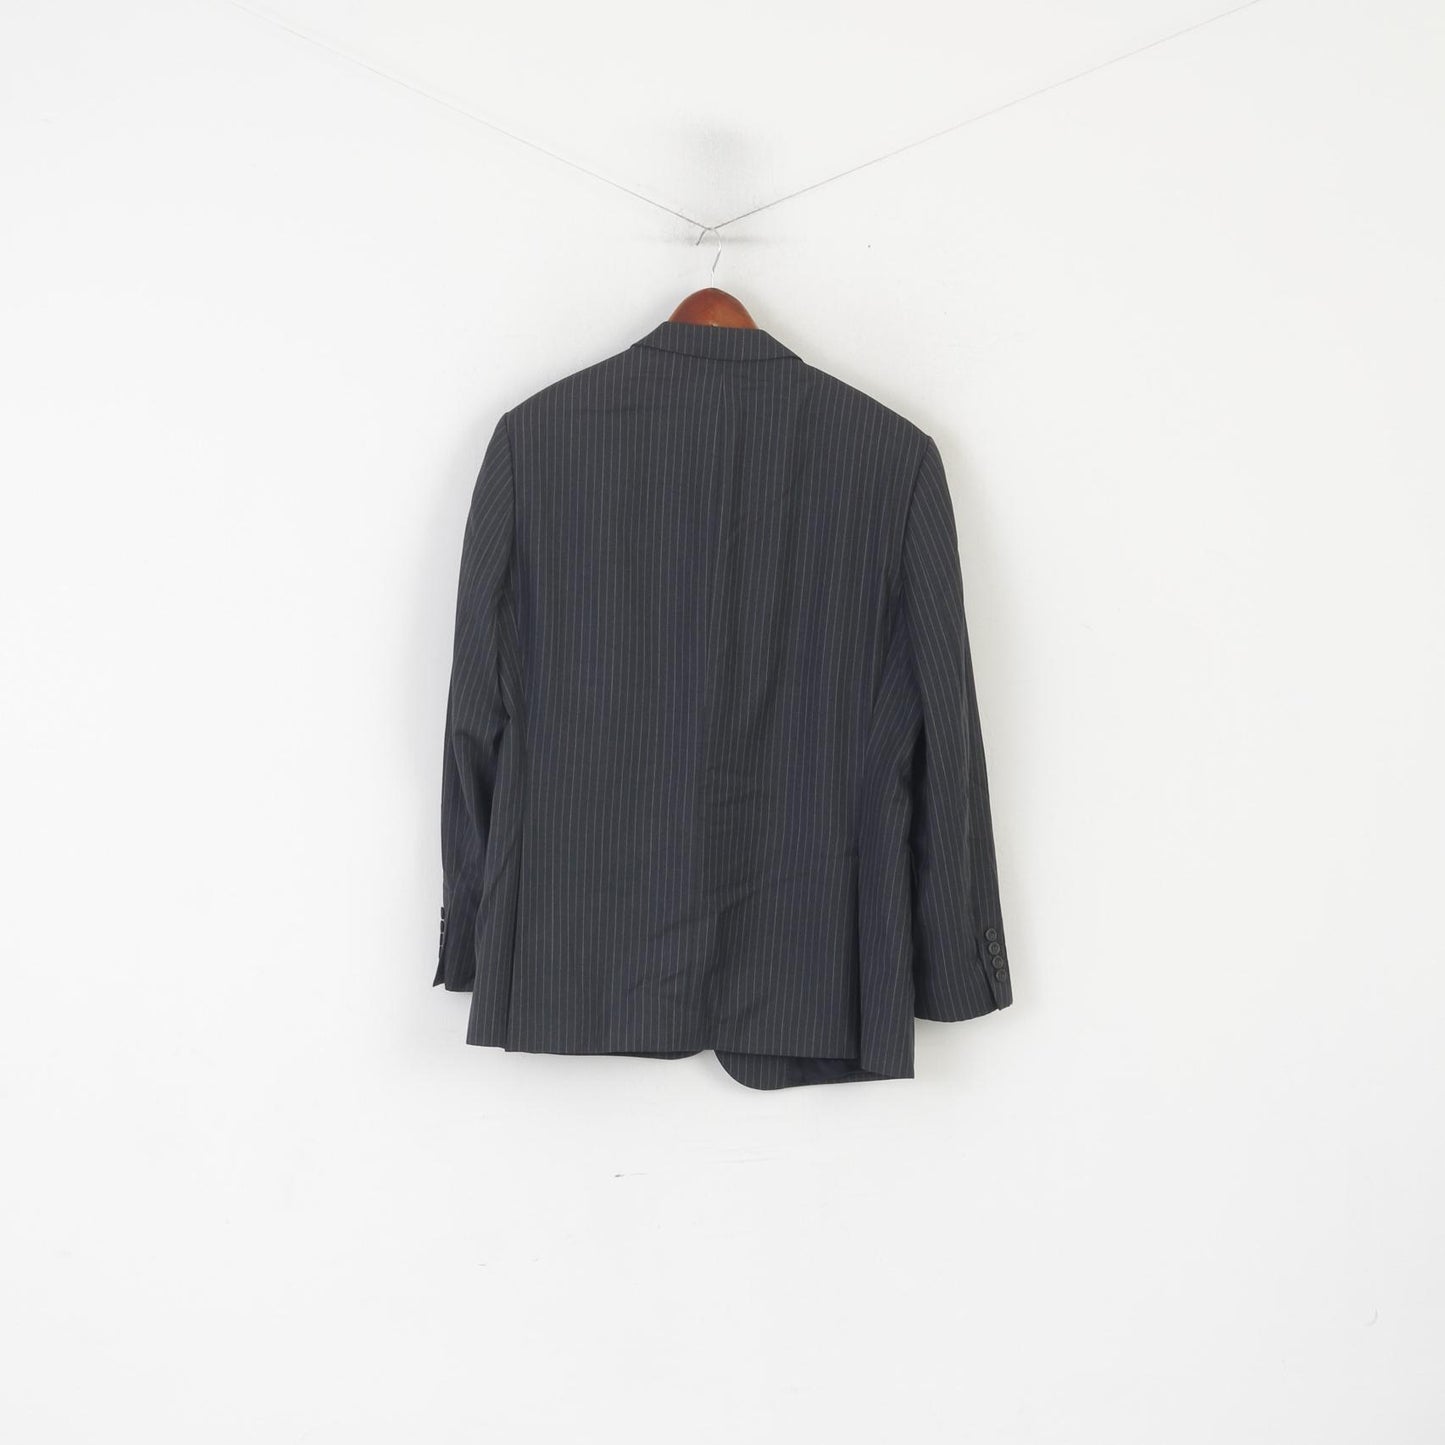 DAKS London Men 54 44 Blazer Gray Wool Striped Vintage Single Breasted Jacket